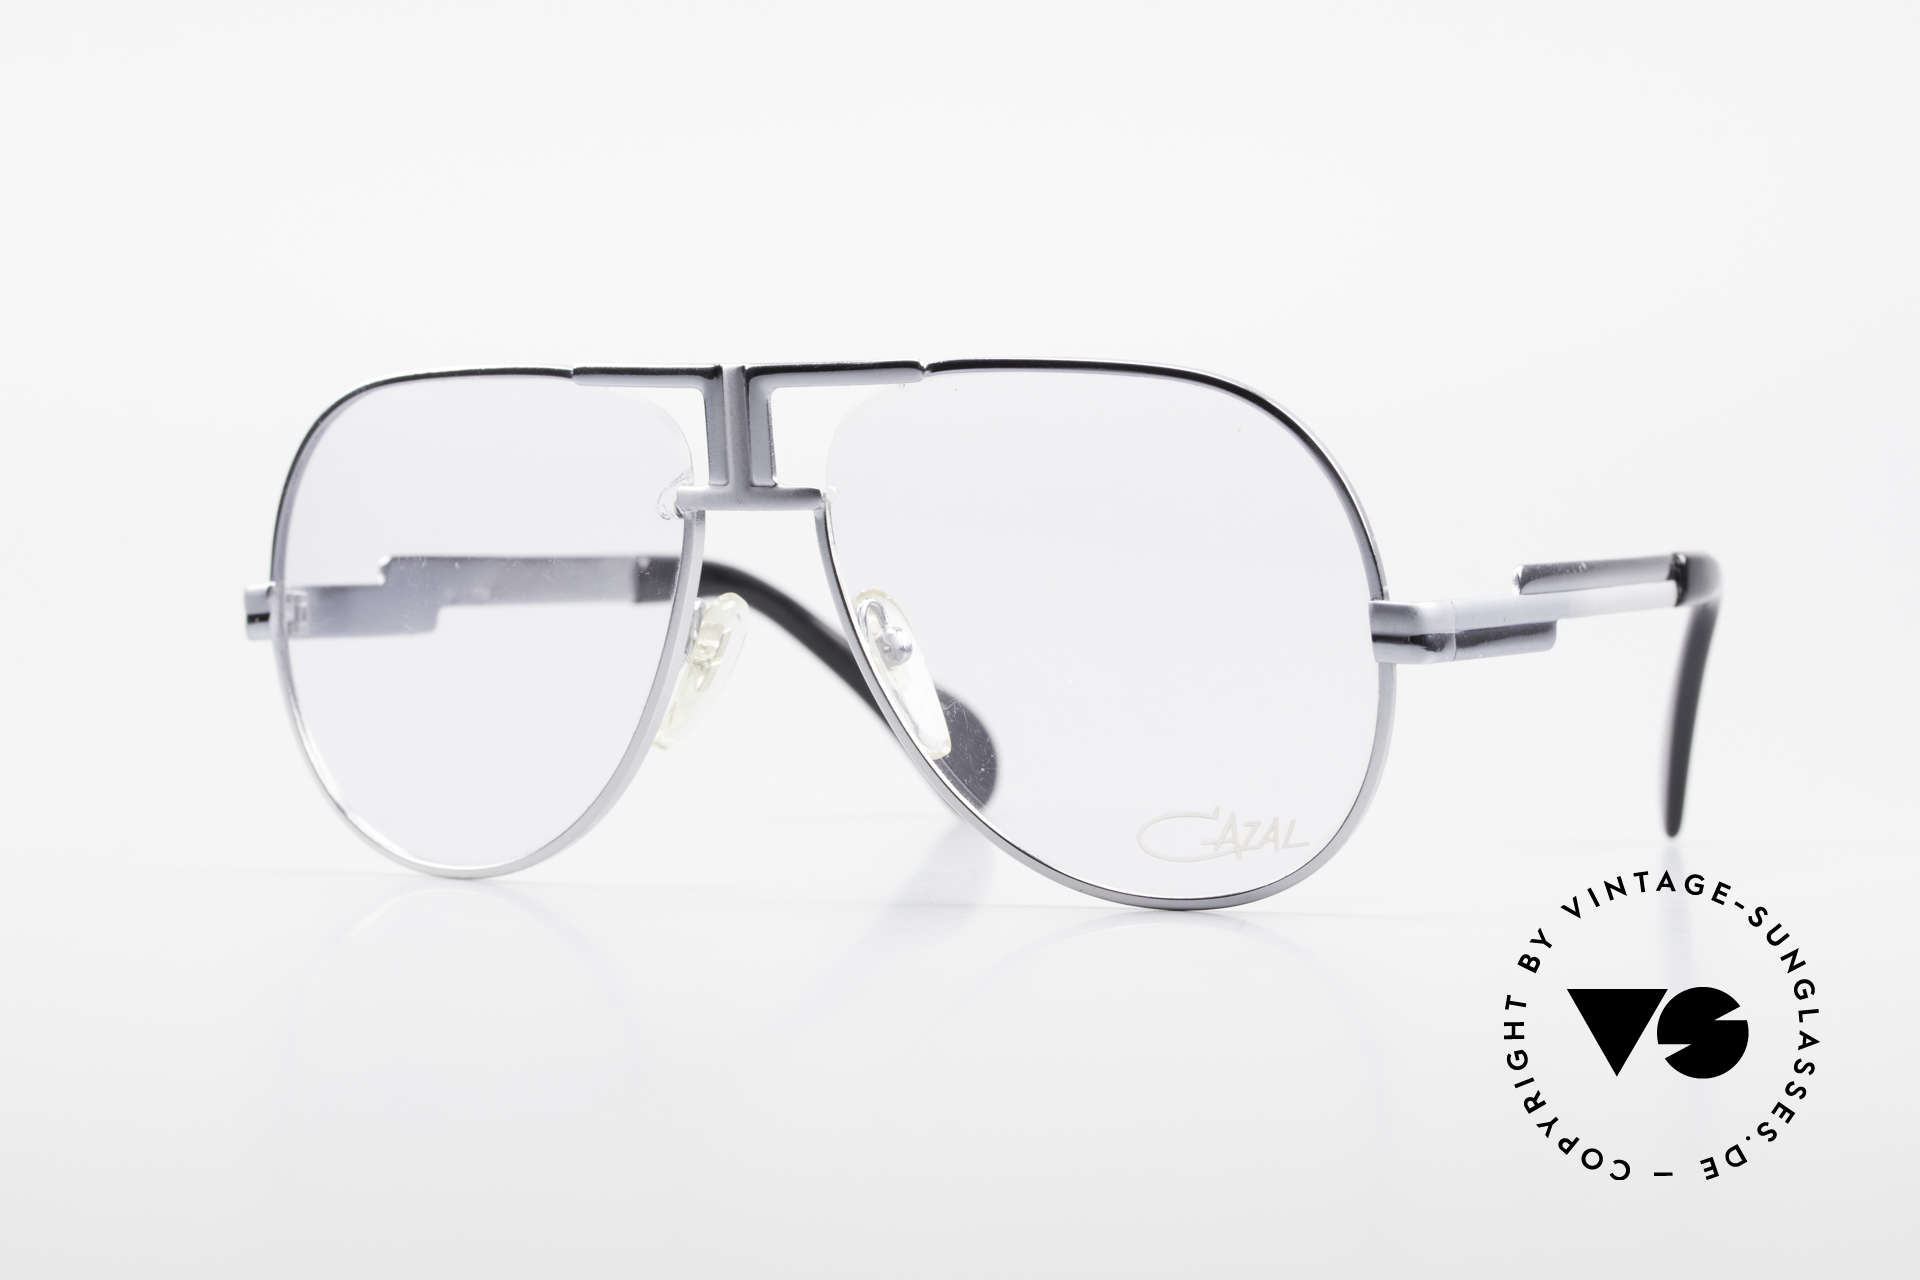 Cazal 702 Ultra Seltene 70er Cazal Brille, extrem seltene Cazal Brille aus den späten 1970ern, Passend für Herren